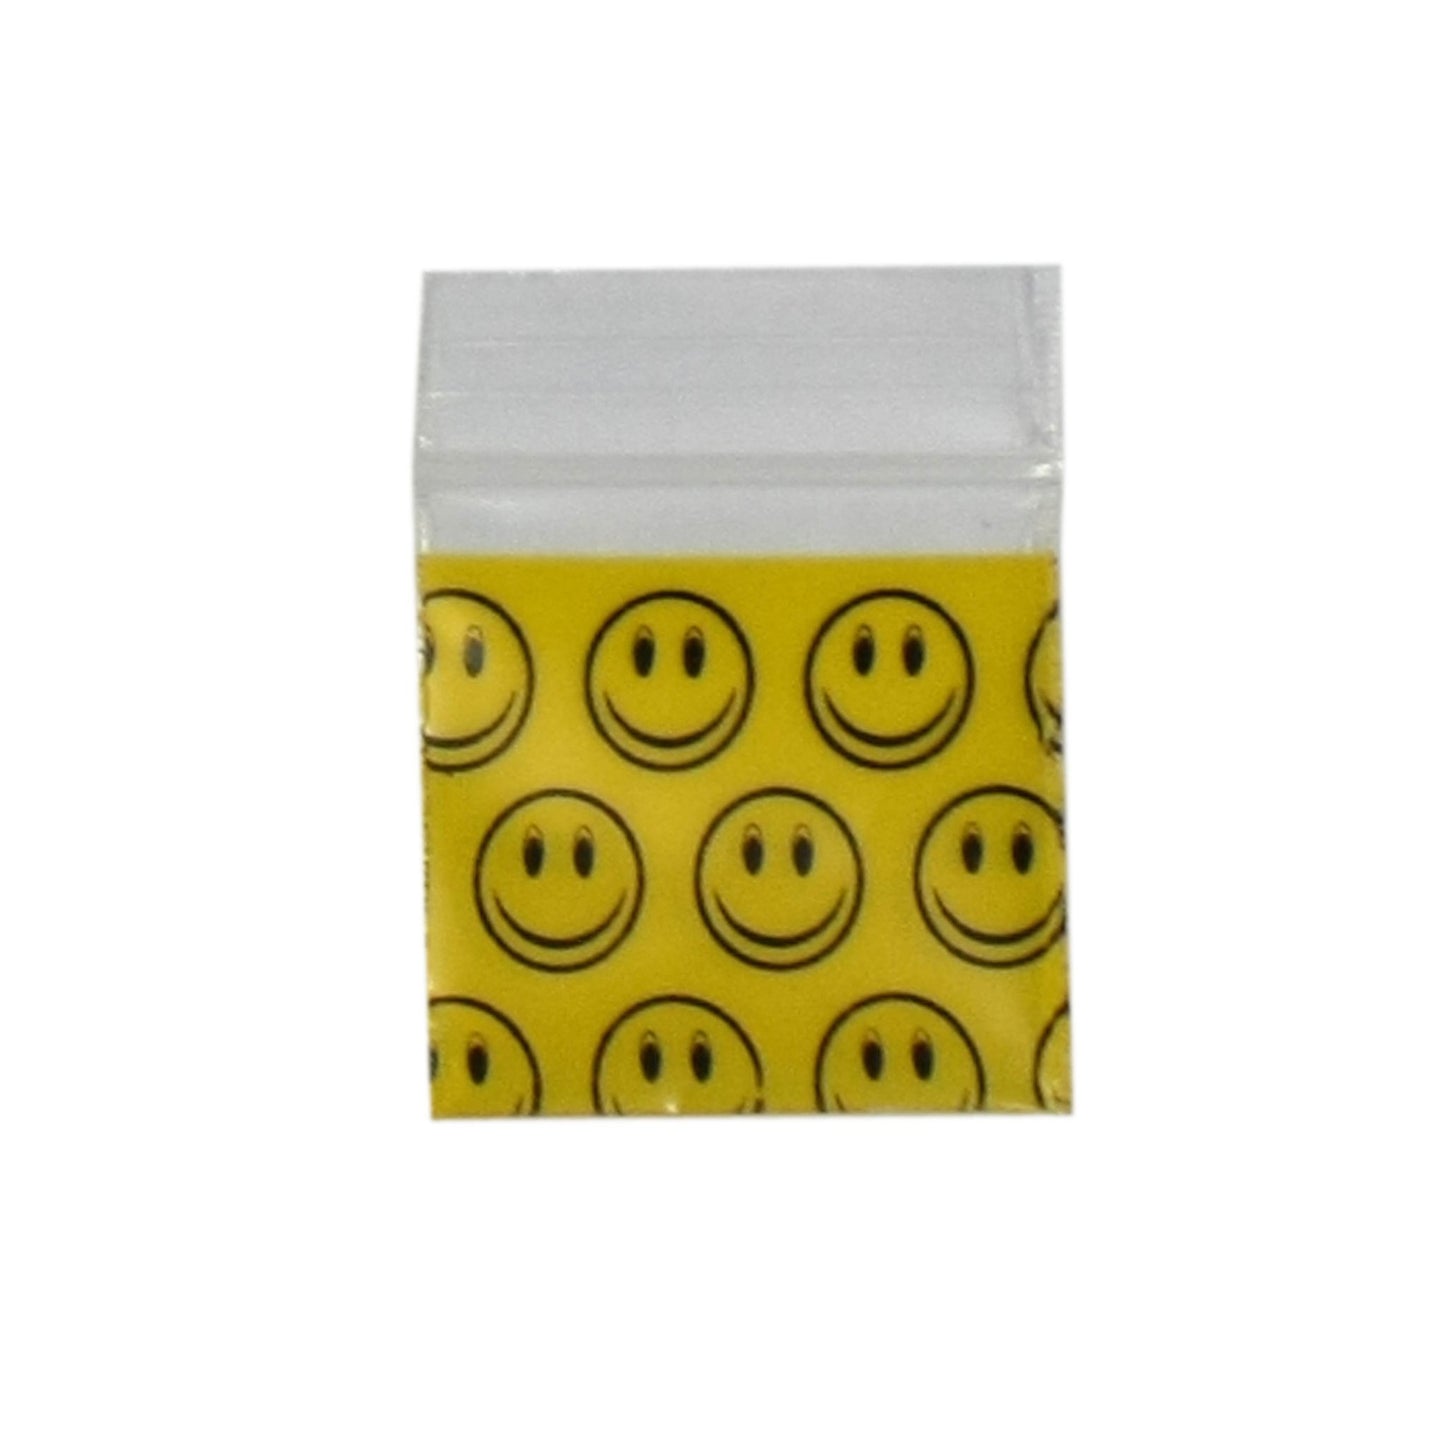 Smiley Face Bag (32mmx32mm) - Plastic Bag - BongsMart Australia